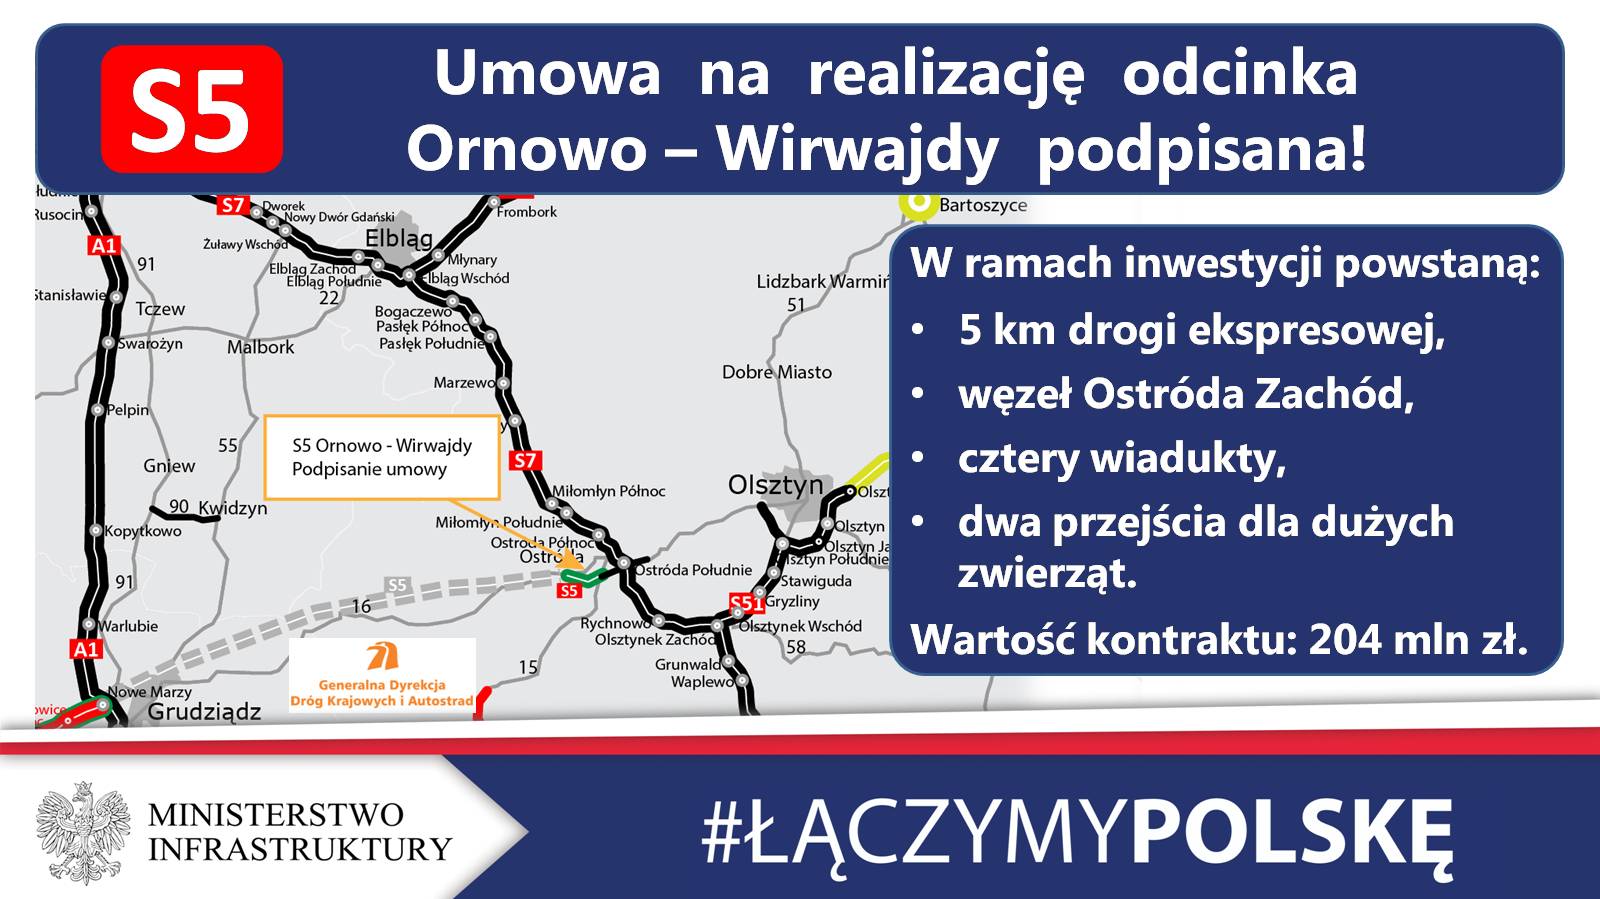 Umowa podpisana! Będzie połączenie drogą ekspresową Olsztyn z autostradą A1